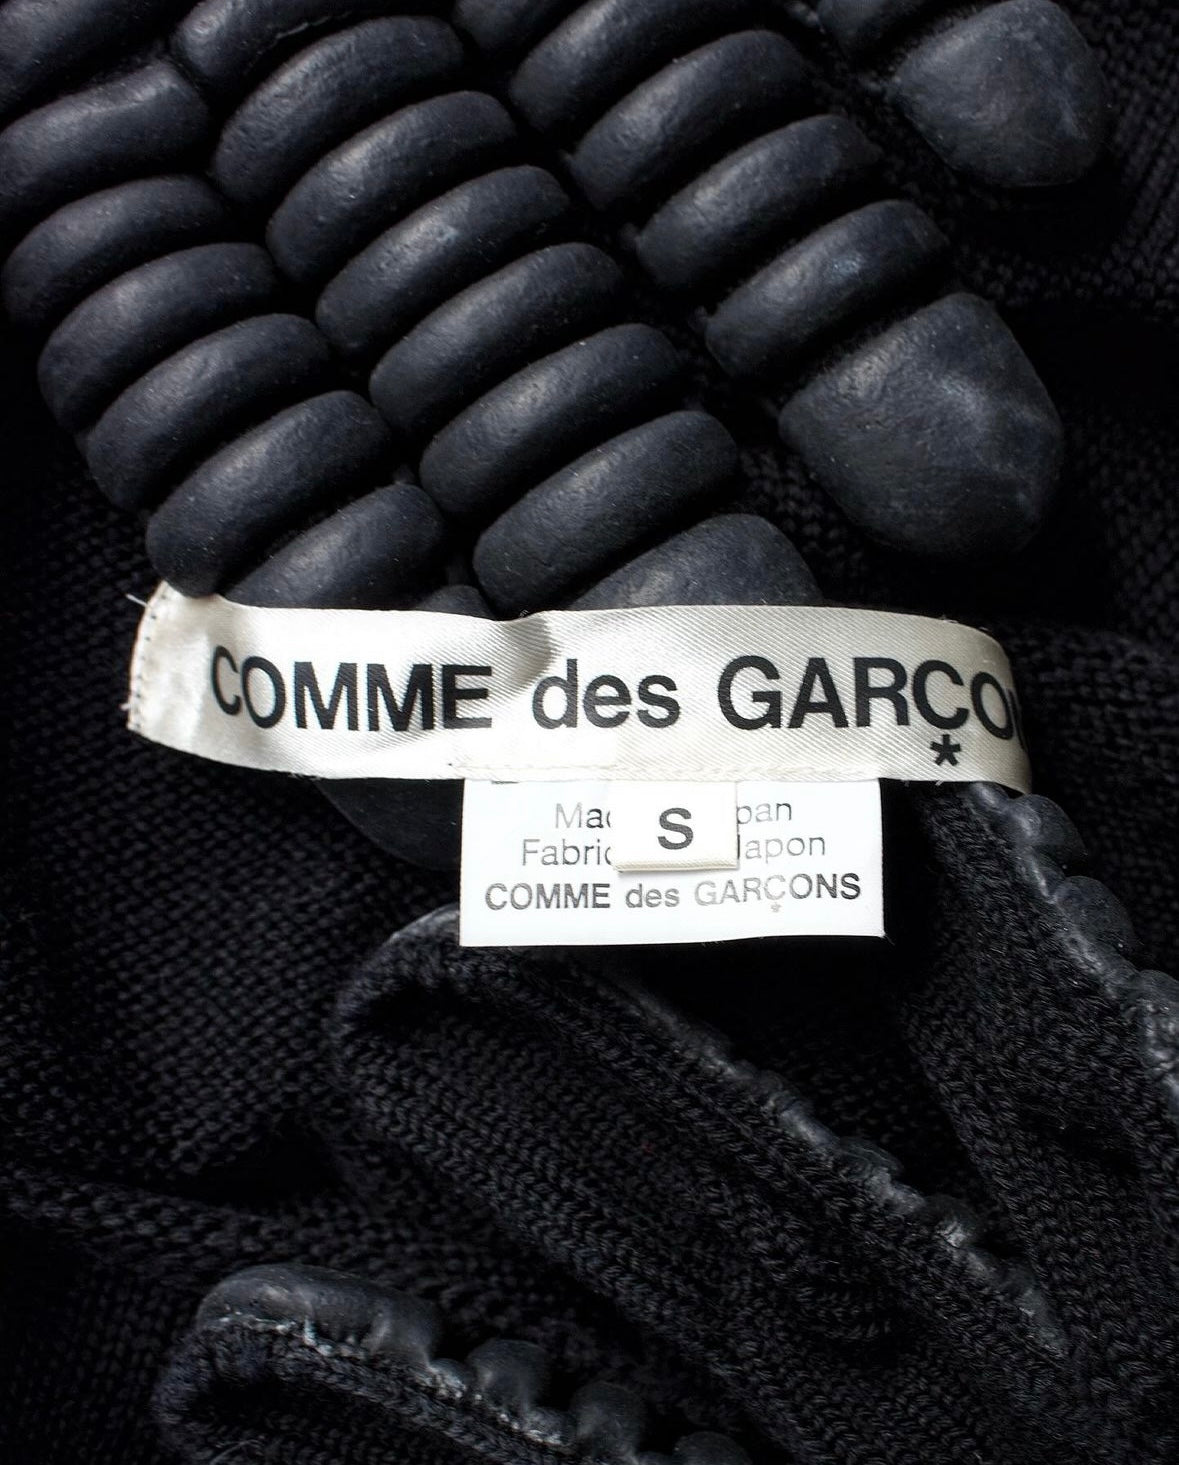 COMME des GARÇONS AW16 Rubber Gloves Convertible Wool Knit Sweater